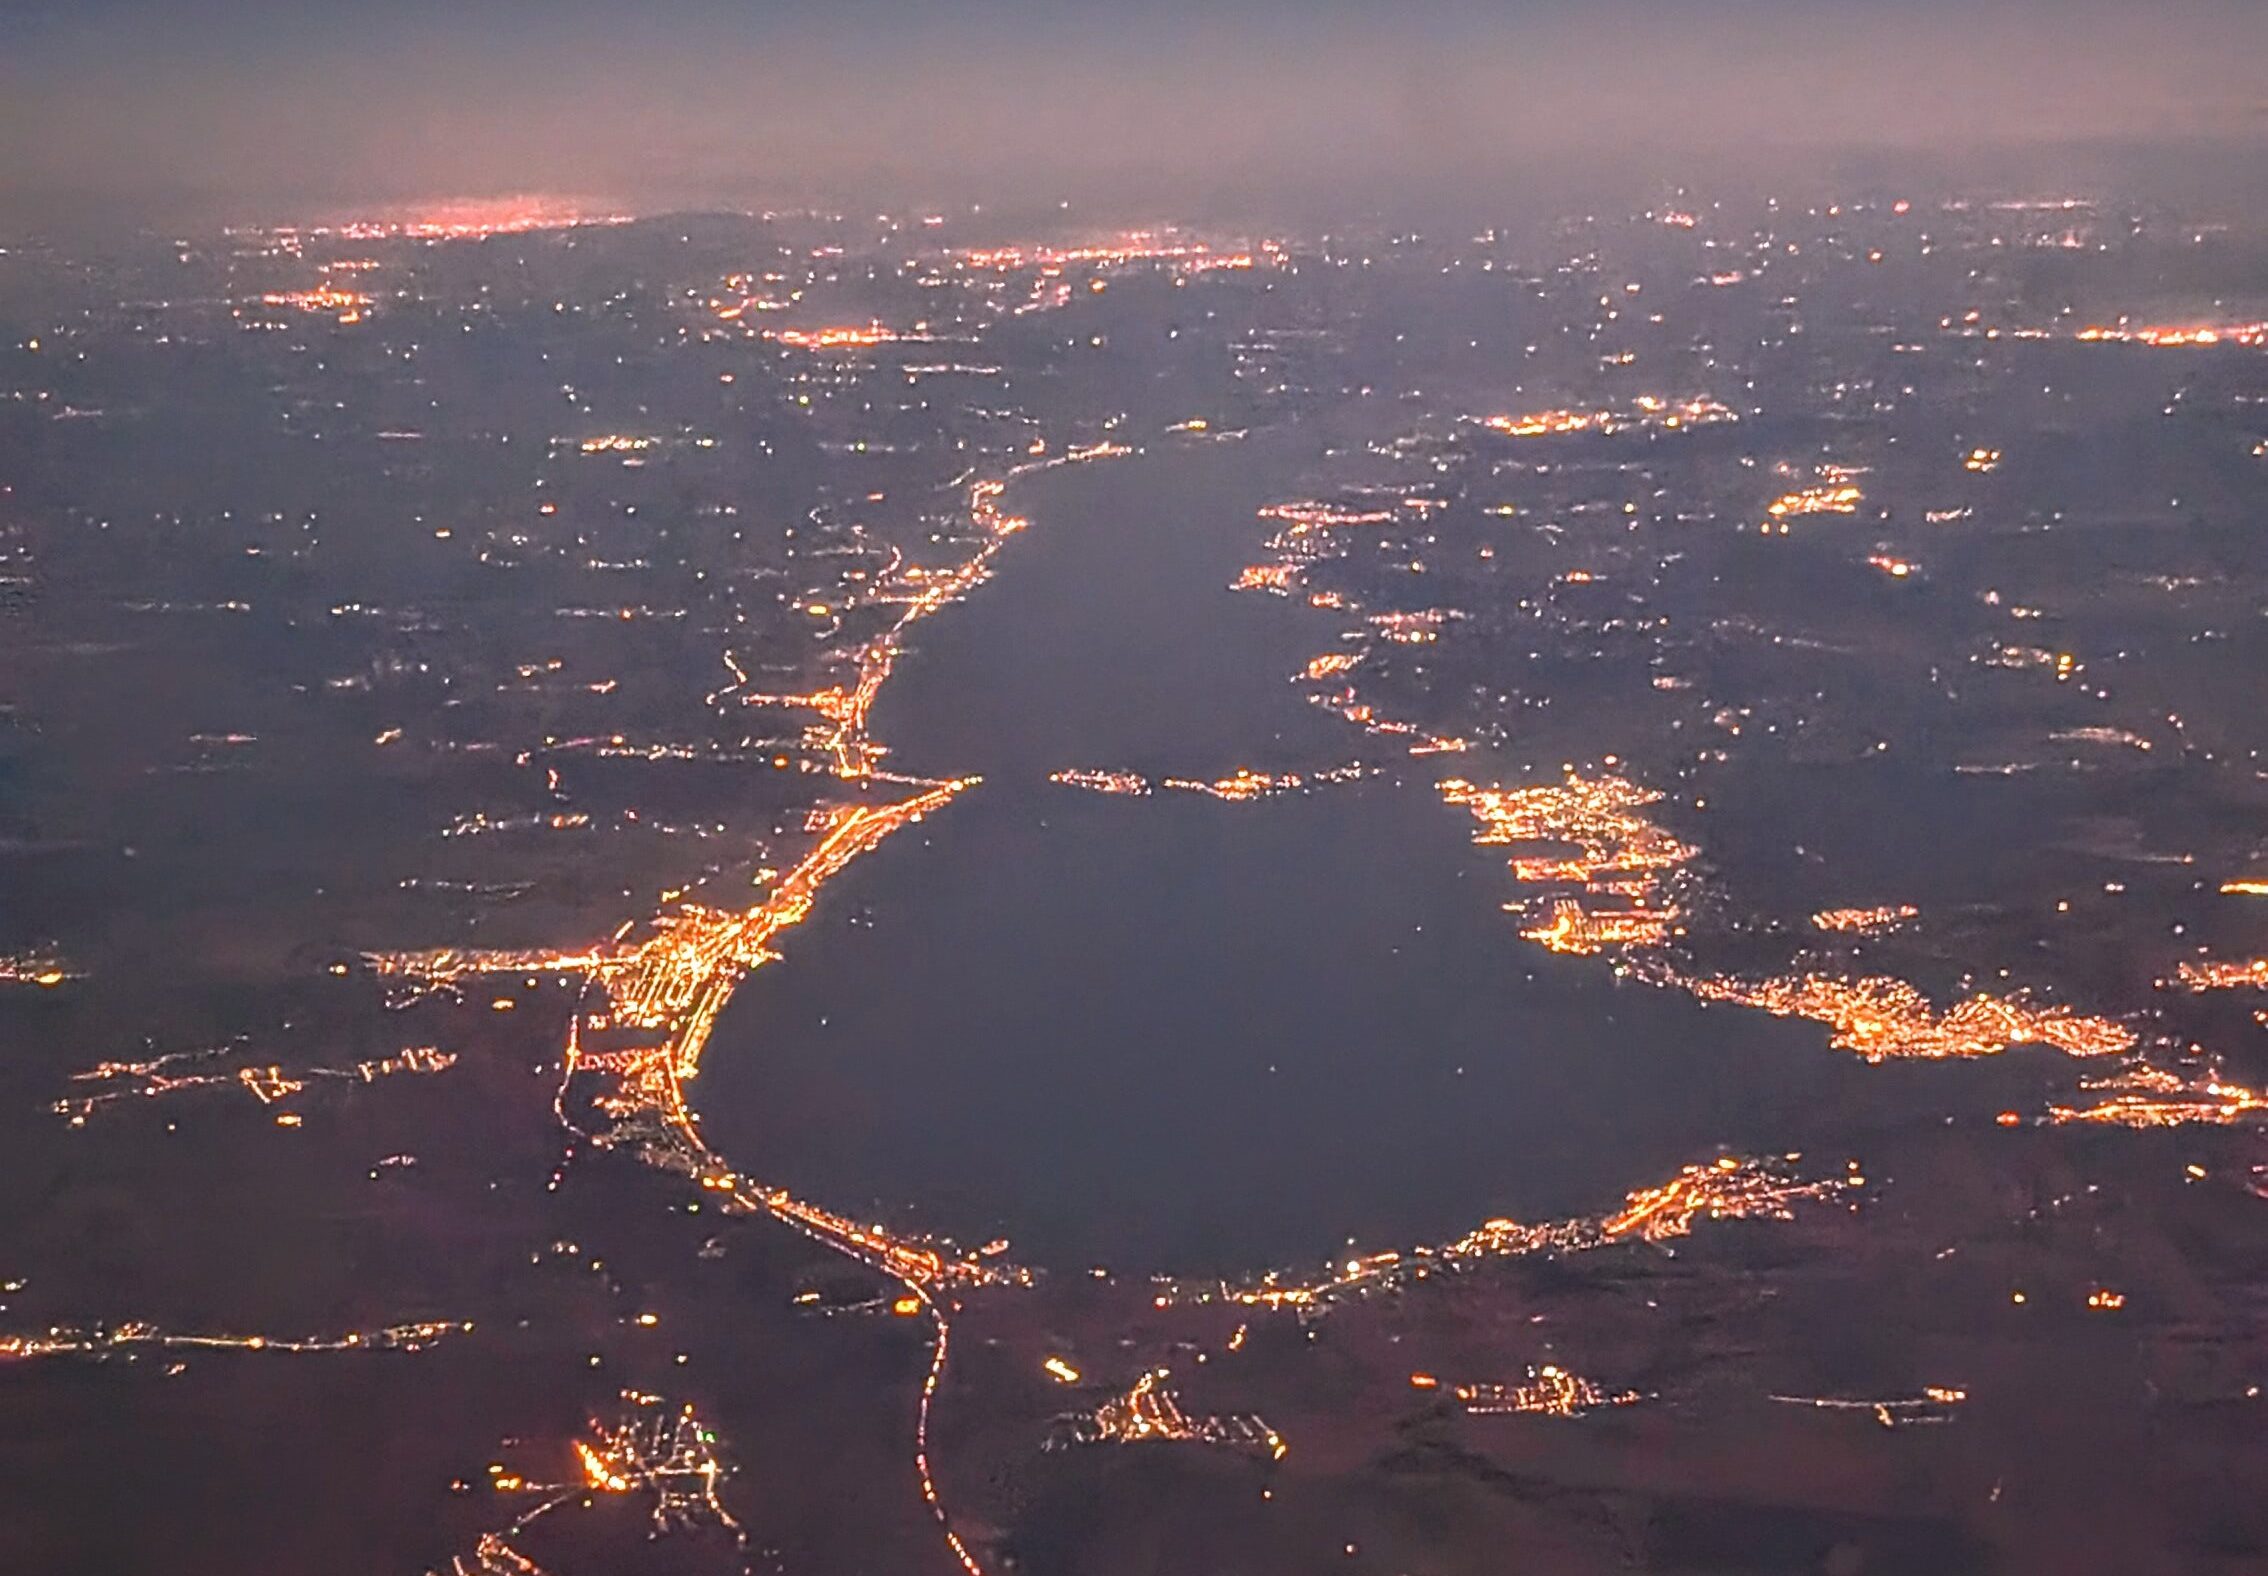 Gyönyörű éjszakai légi felvételek készültek a Balatonról